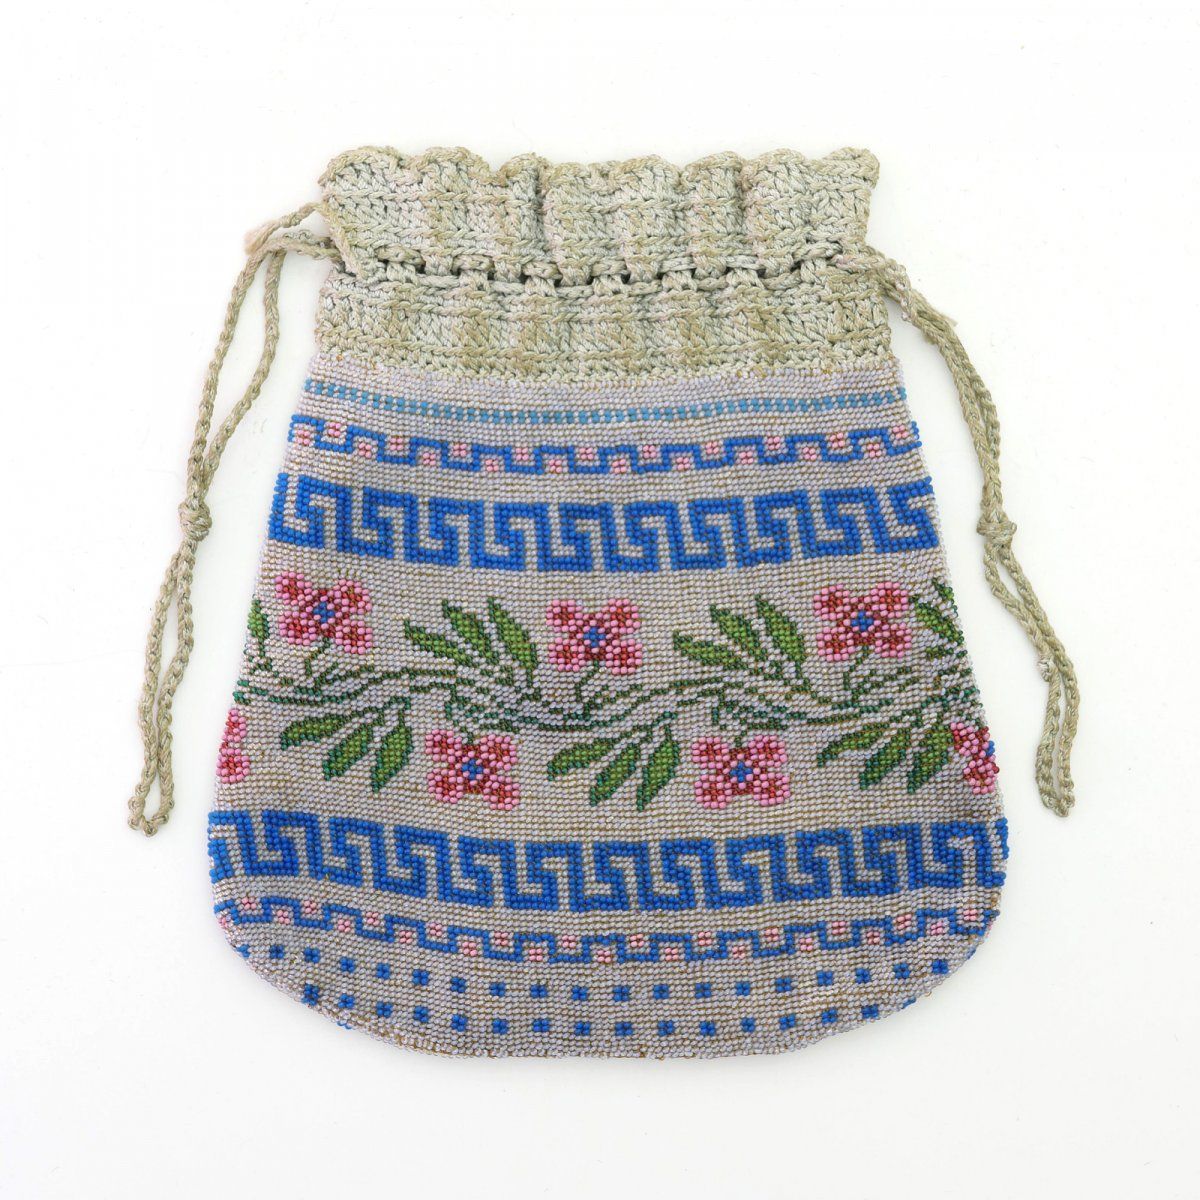 Null 有花和蜿蜒装饰的小袋，19世纪中期，高19 x 17厘米。编织的多色珠子，纺织衬里，钩编的抽绳。